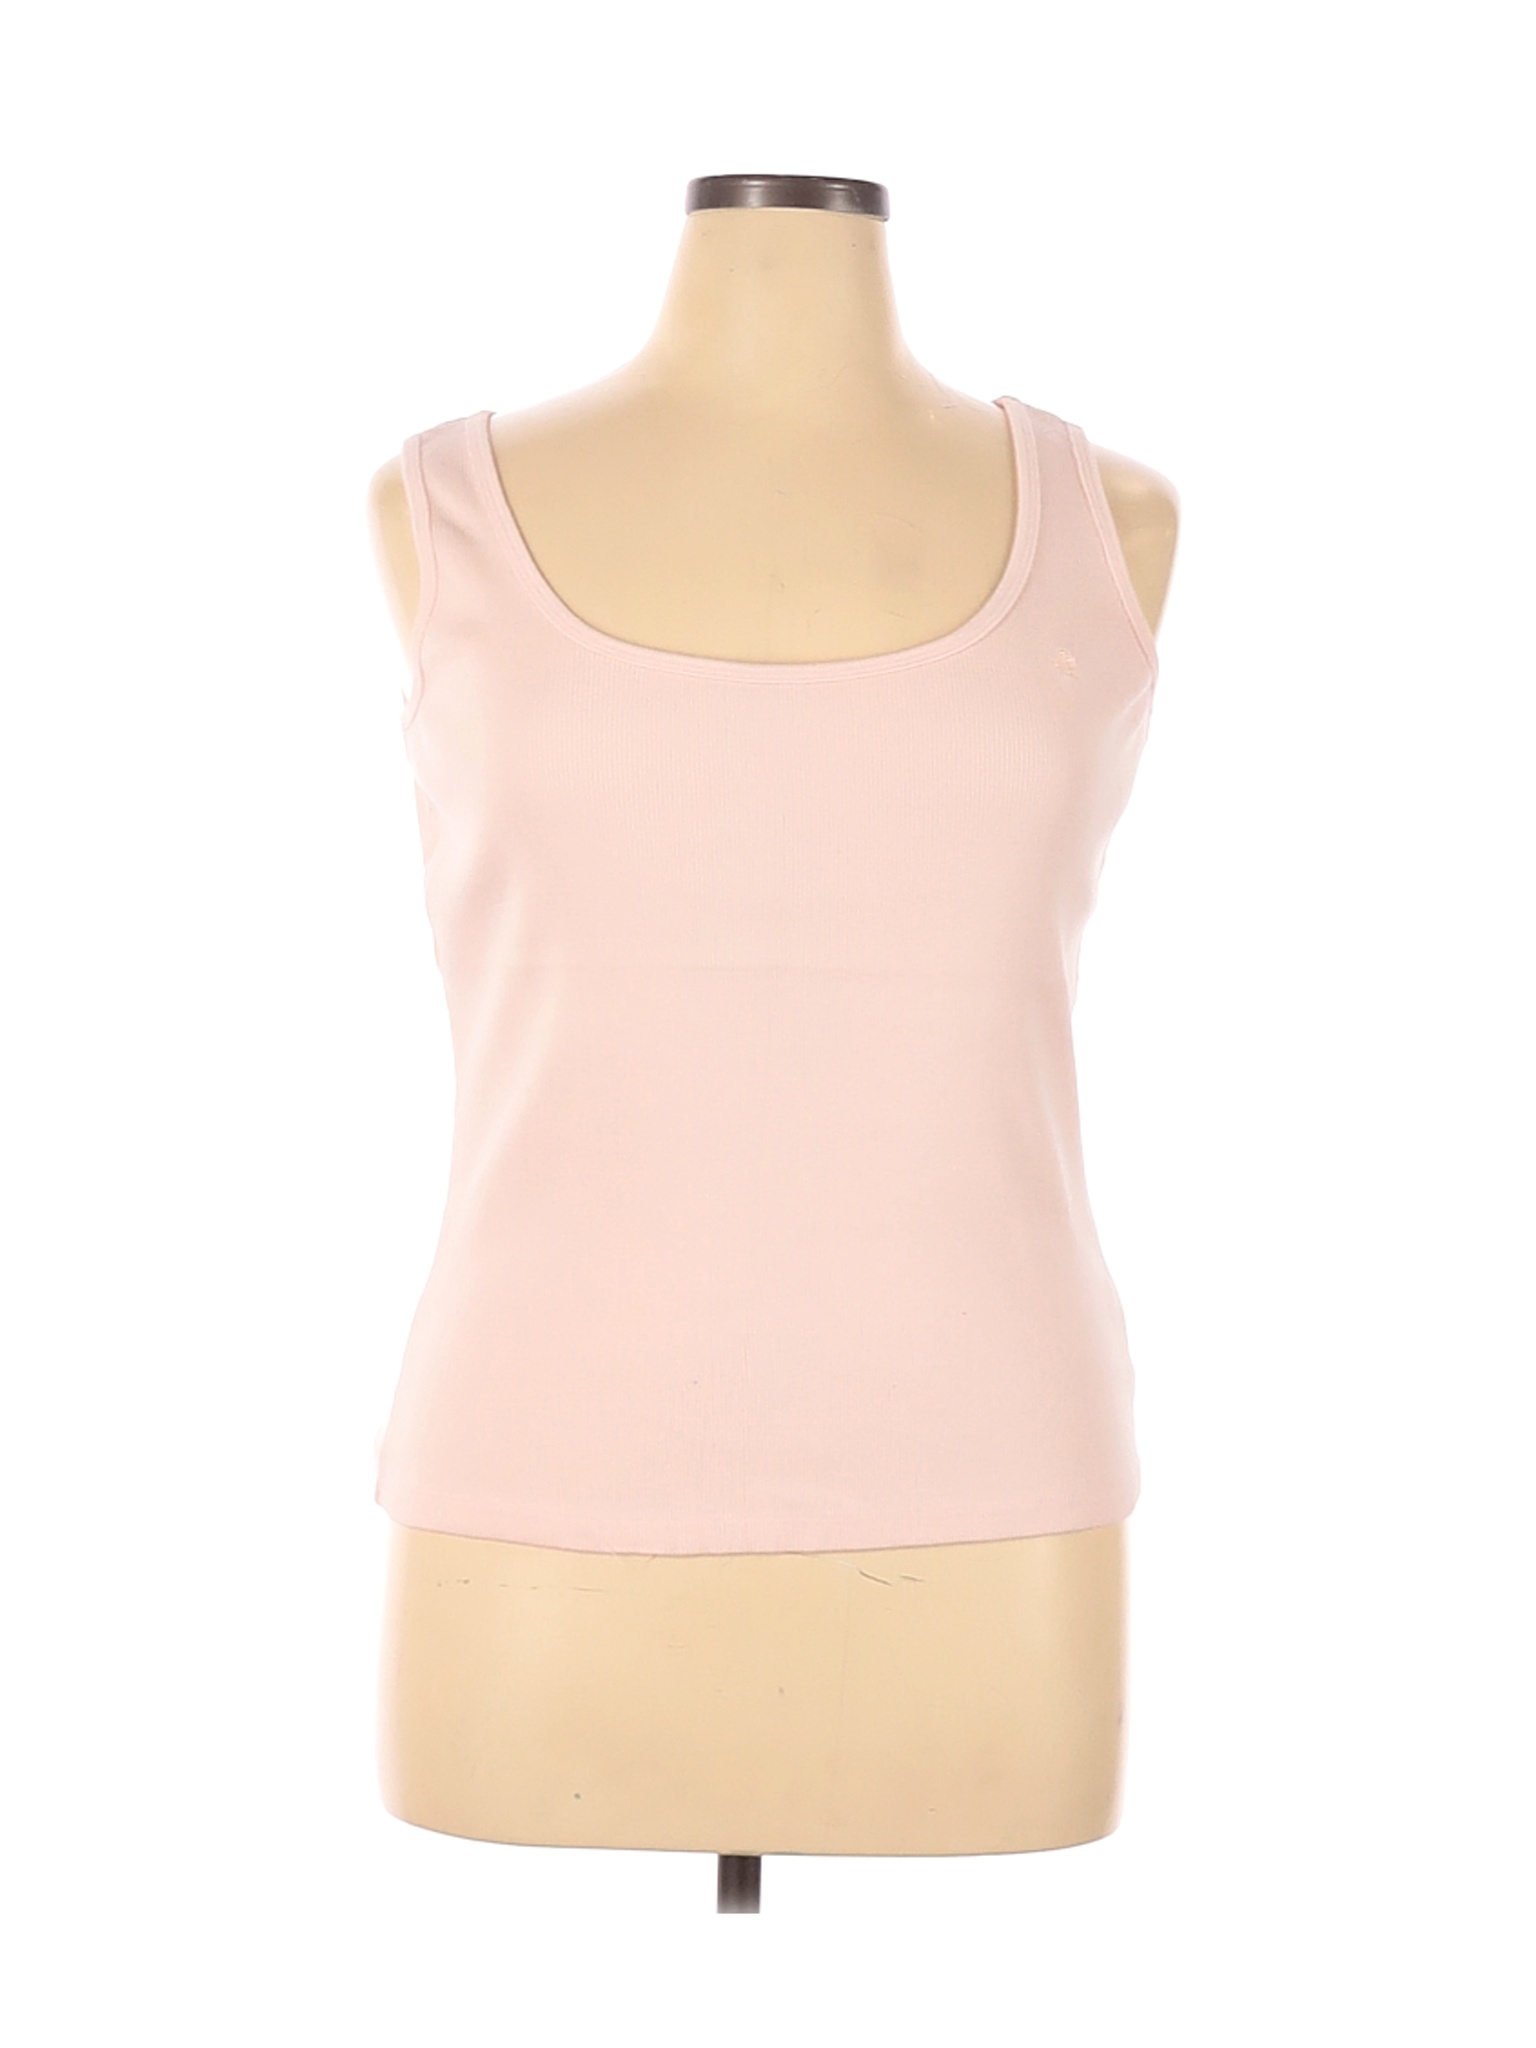 Lauren by Ralph Lauren Women Pink Tank Top XL | eBay